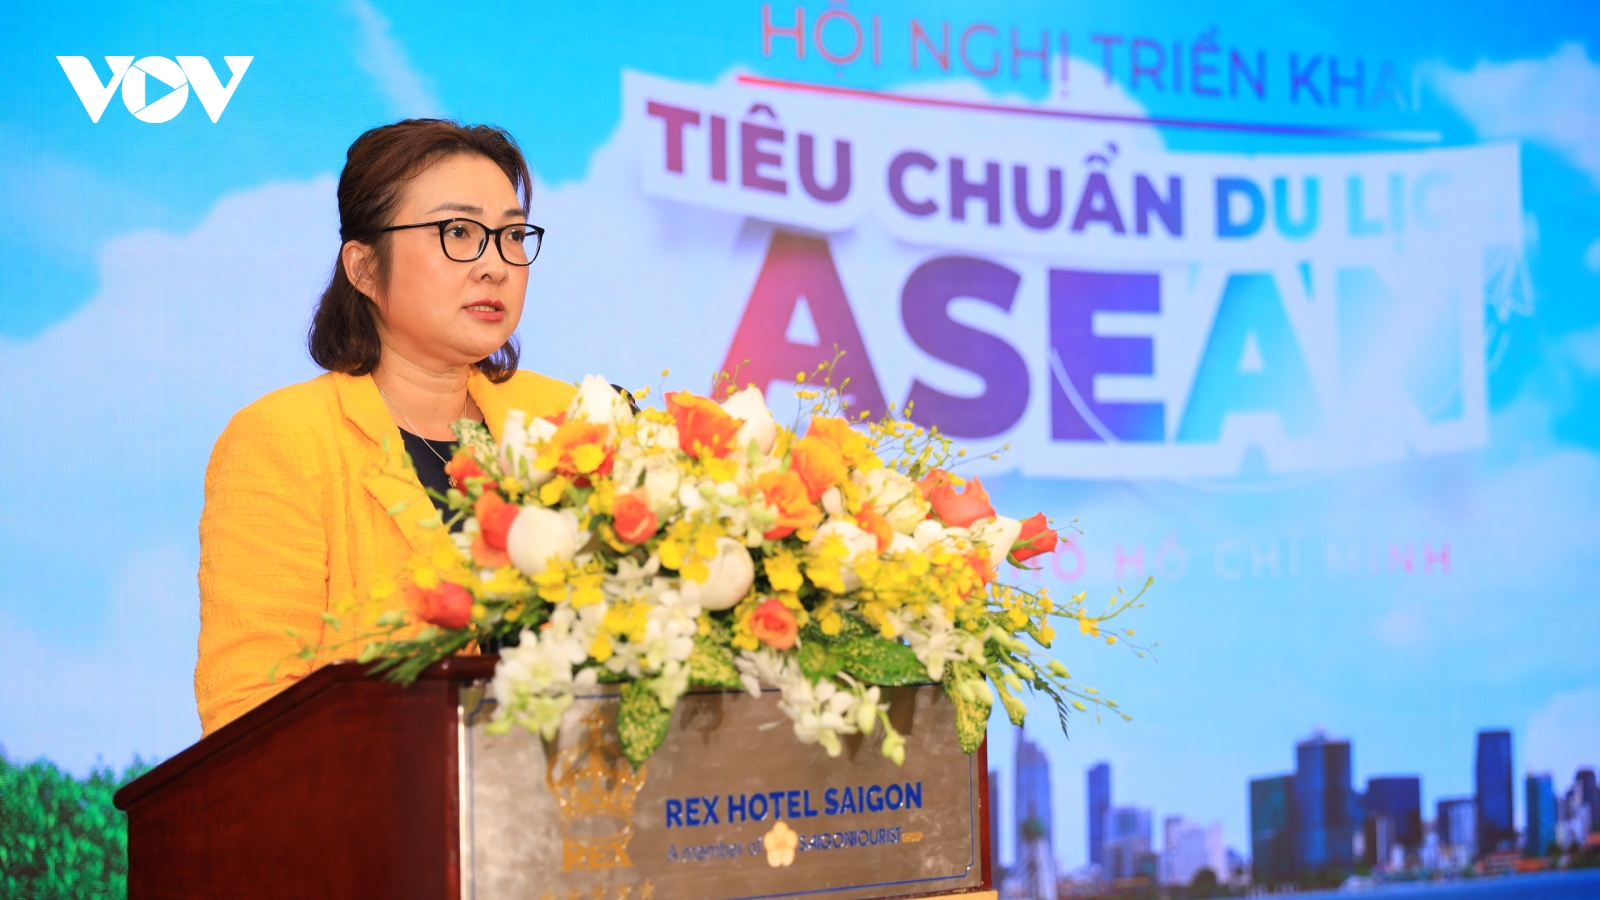 TP.HCM sẽ có nhiều lợi ích khi áp dụng tiêu chuẩn du lịch ASEAN